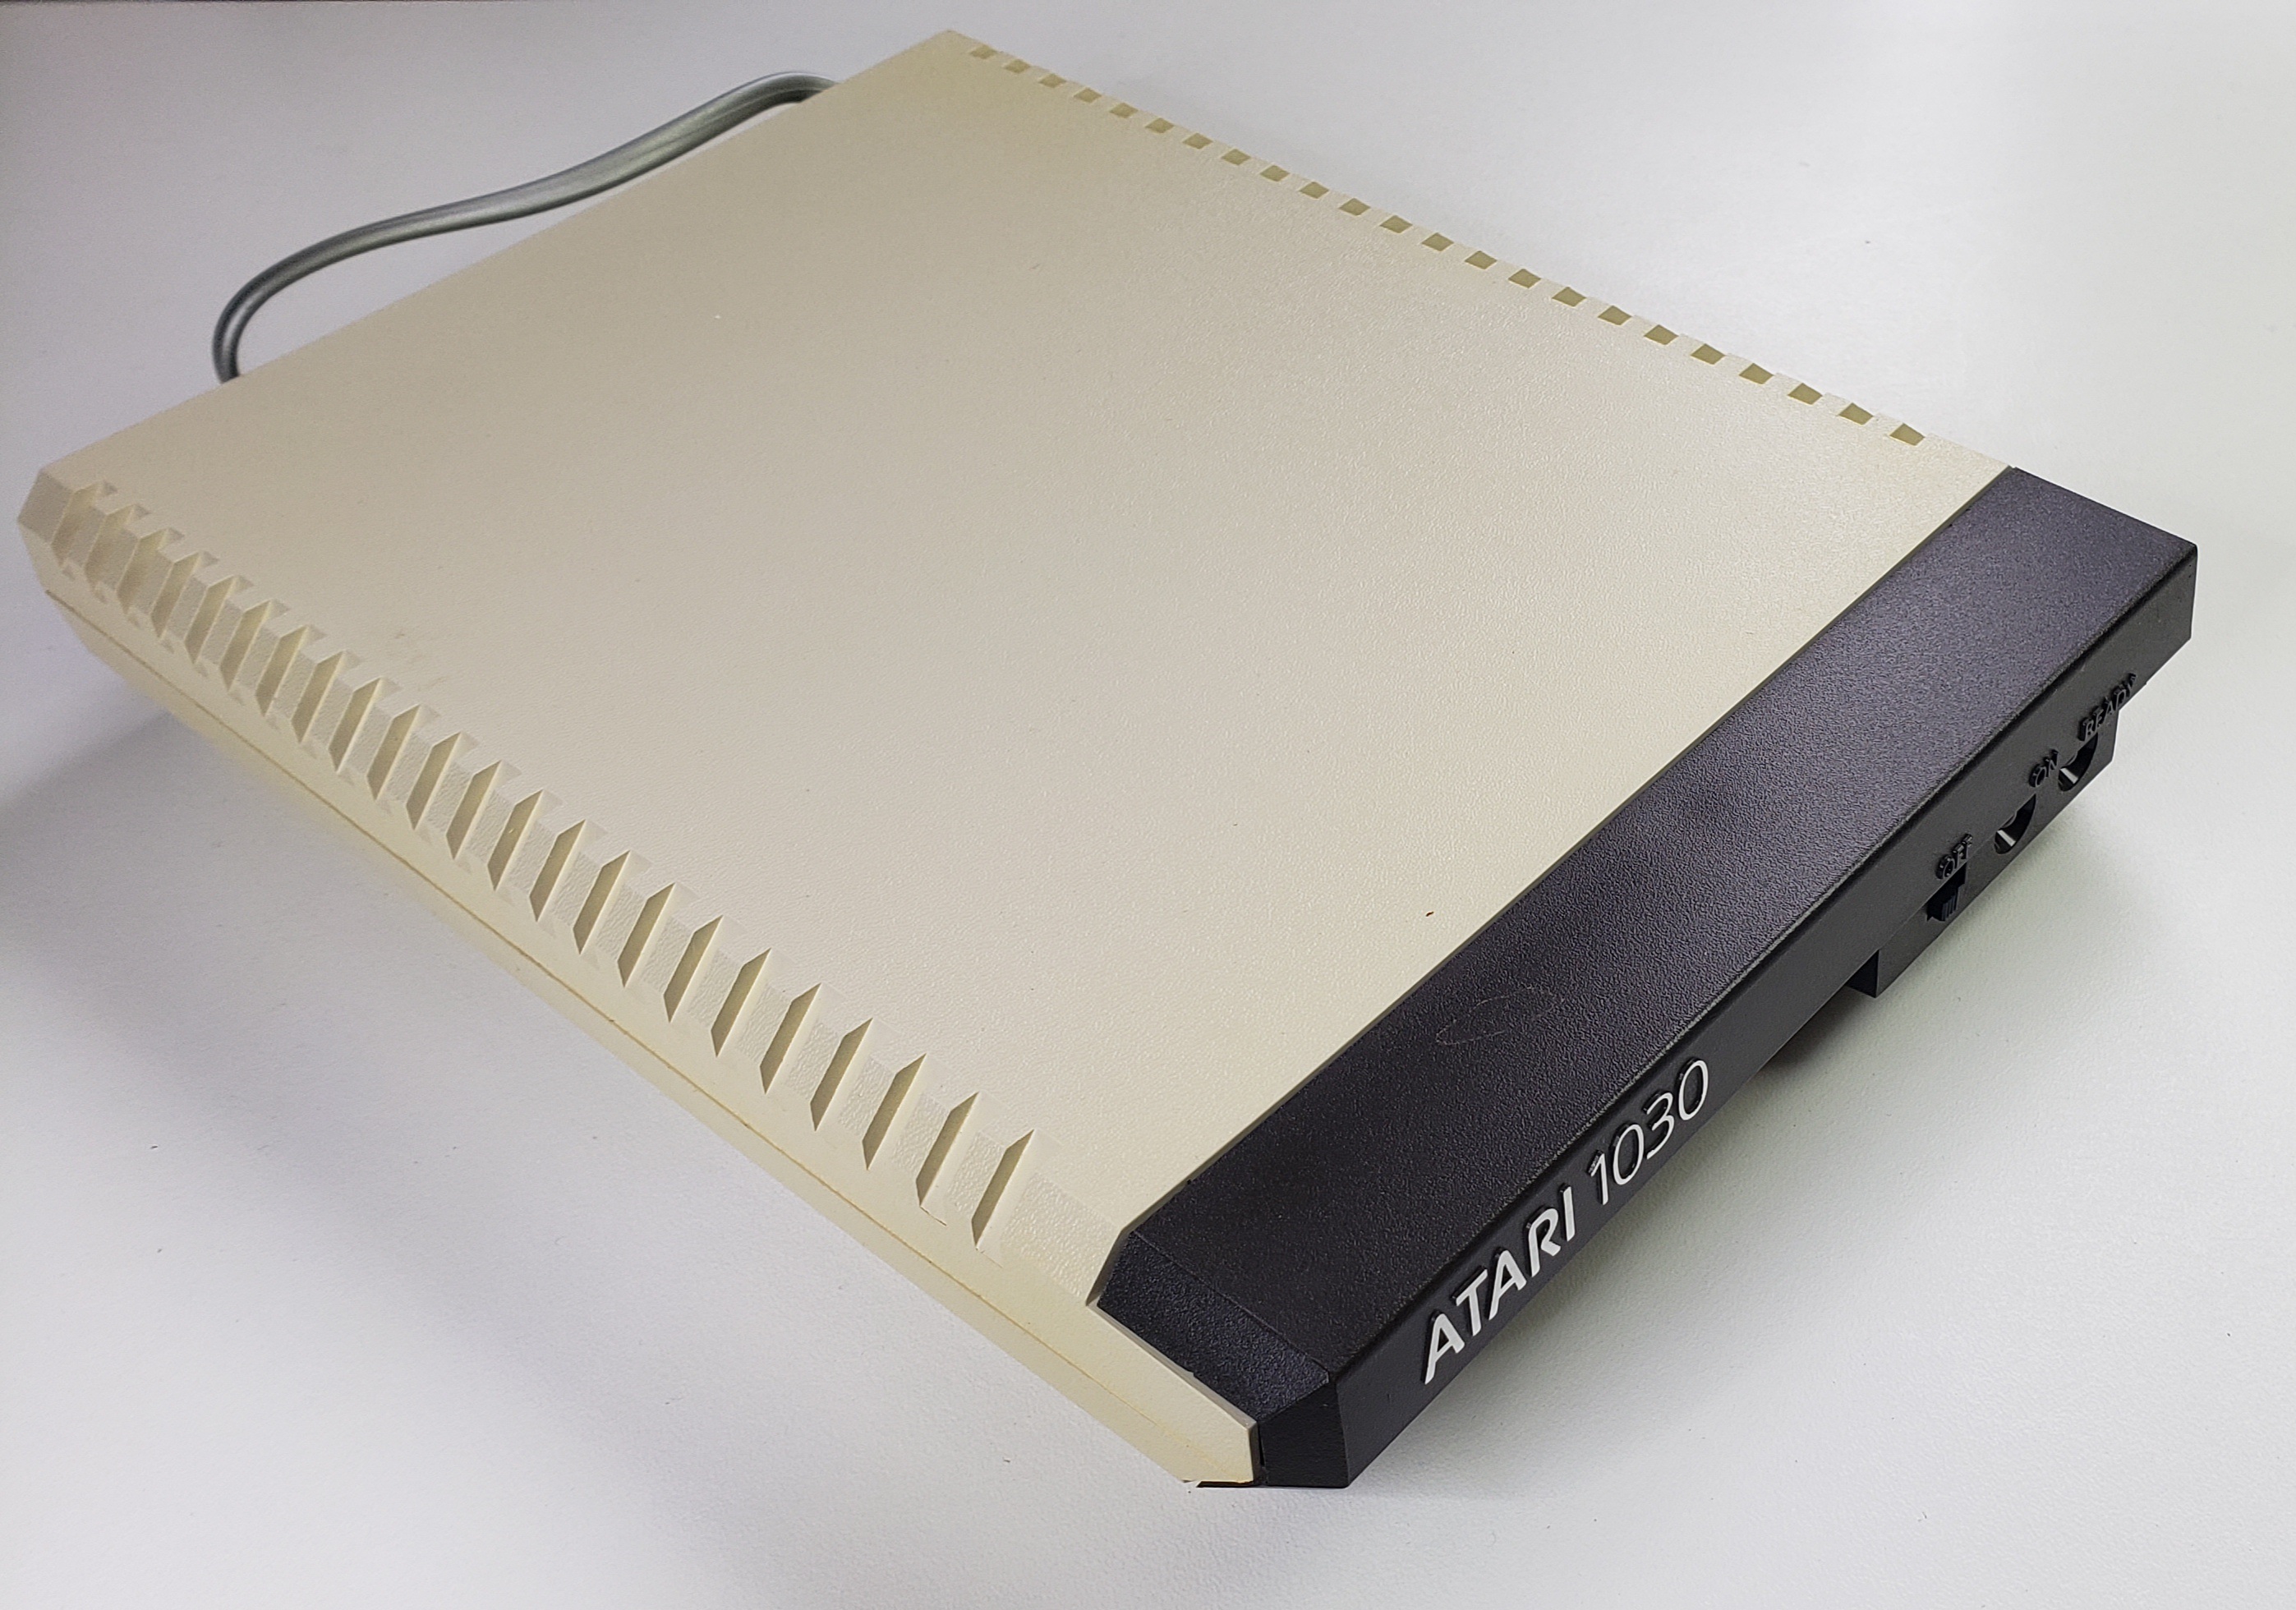 Atari 1030: Modem - 976FE43106095